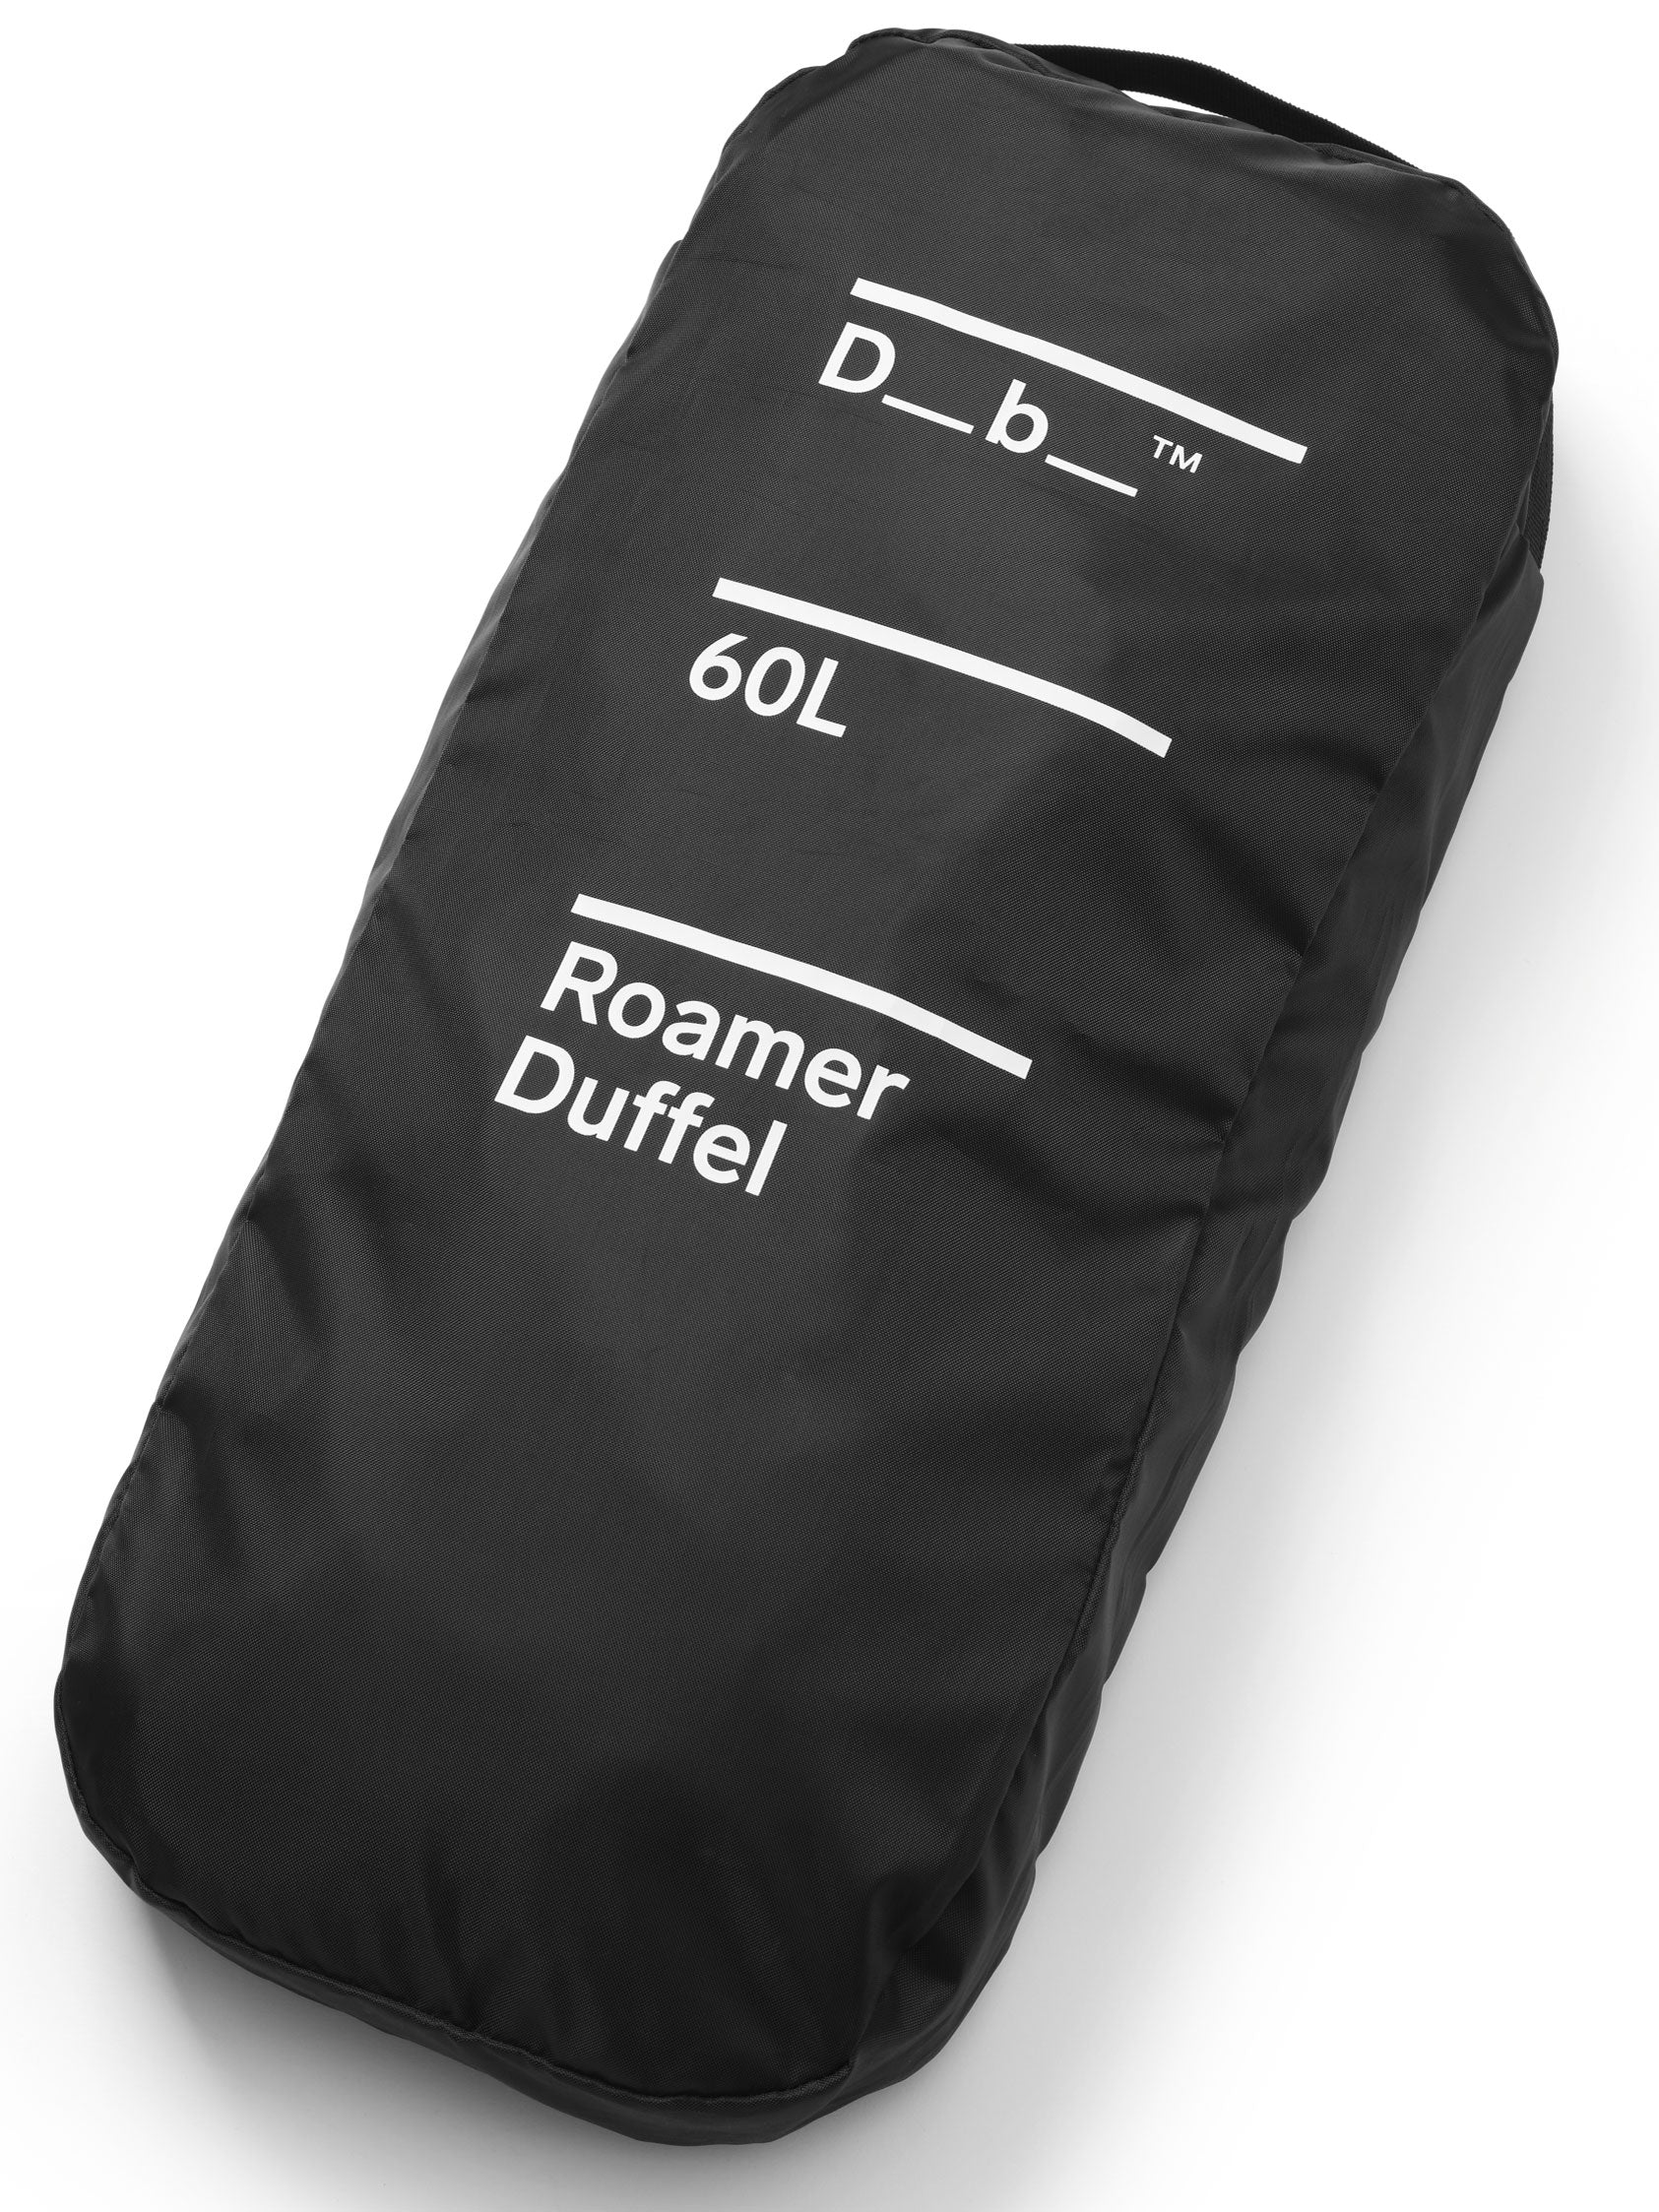 Roamer Duffel 60L